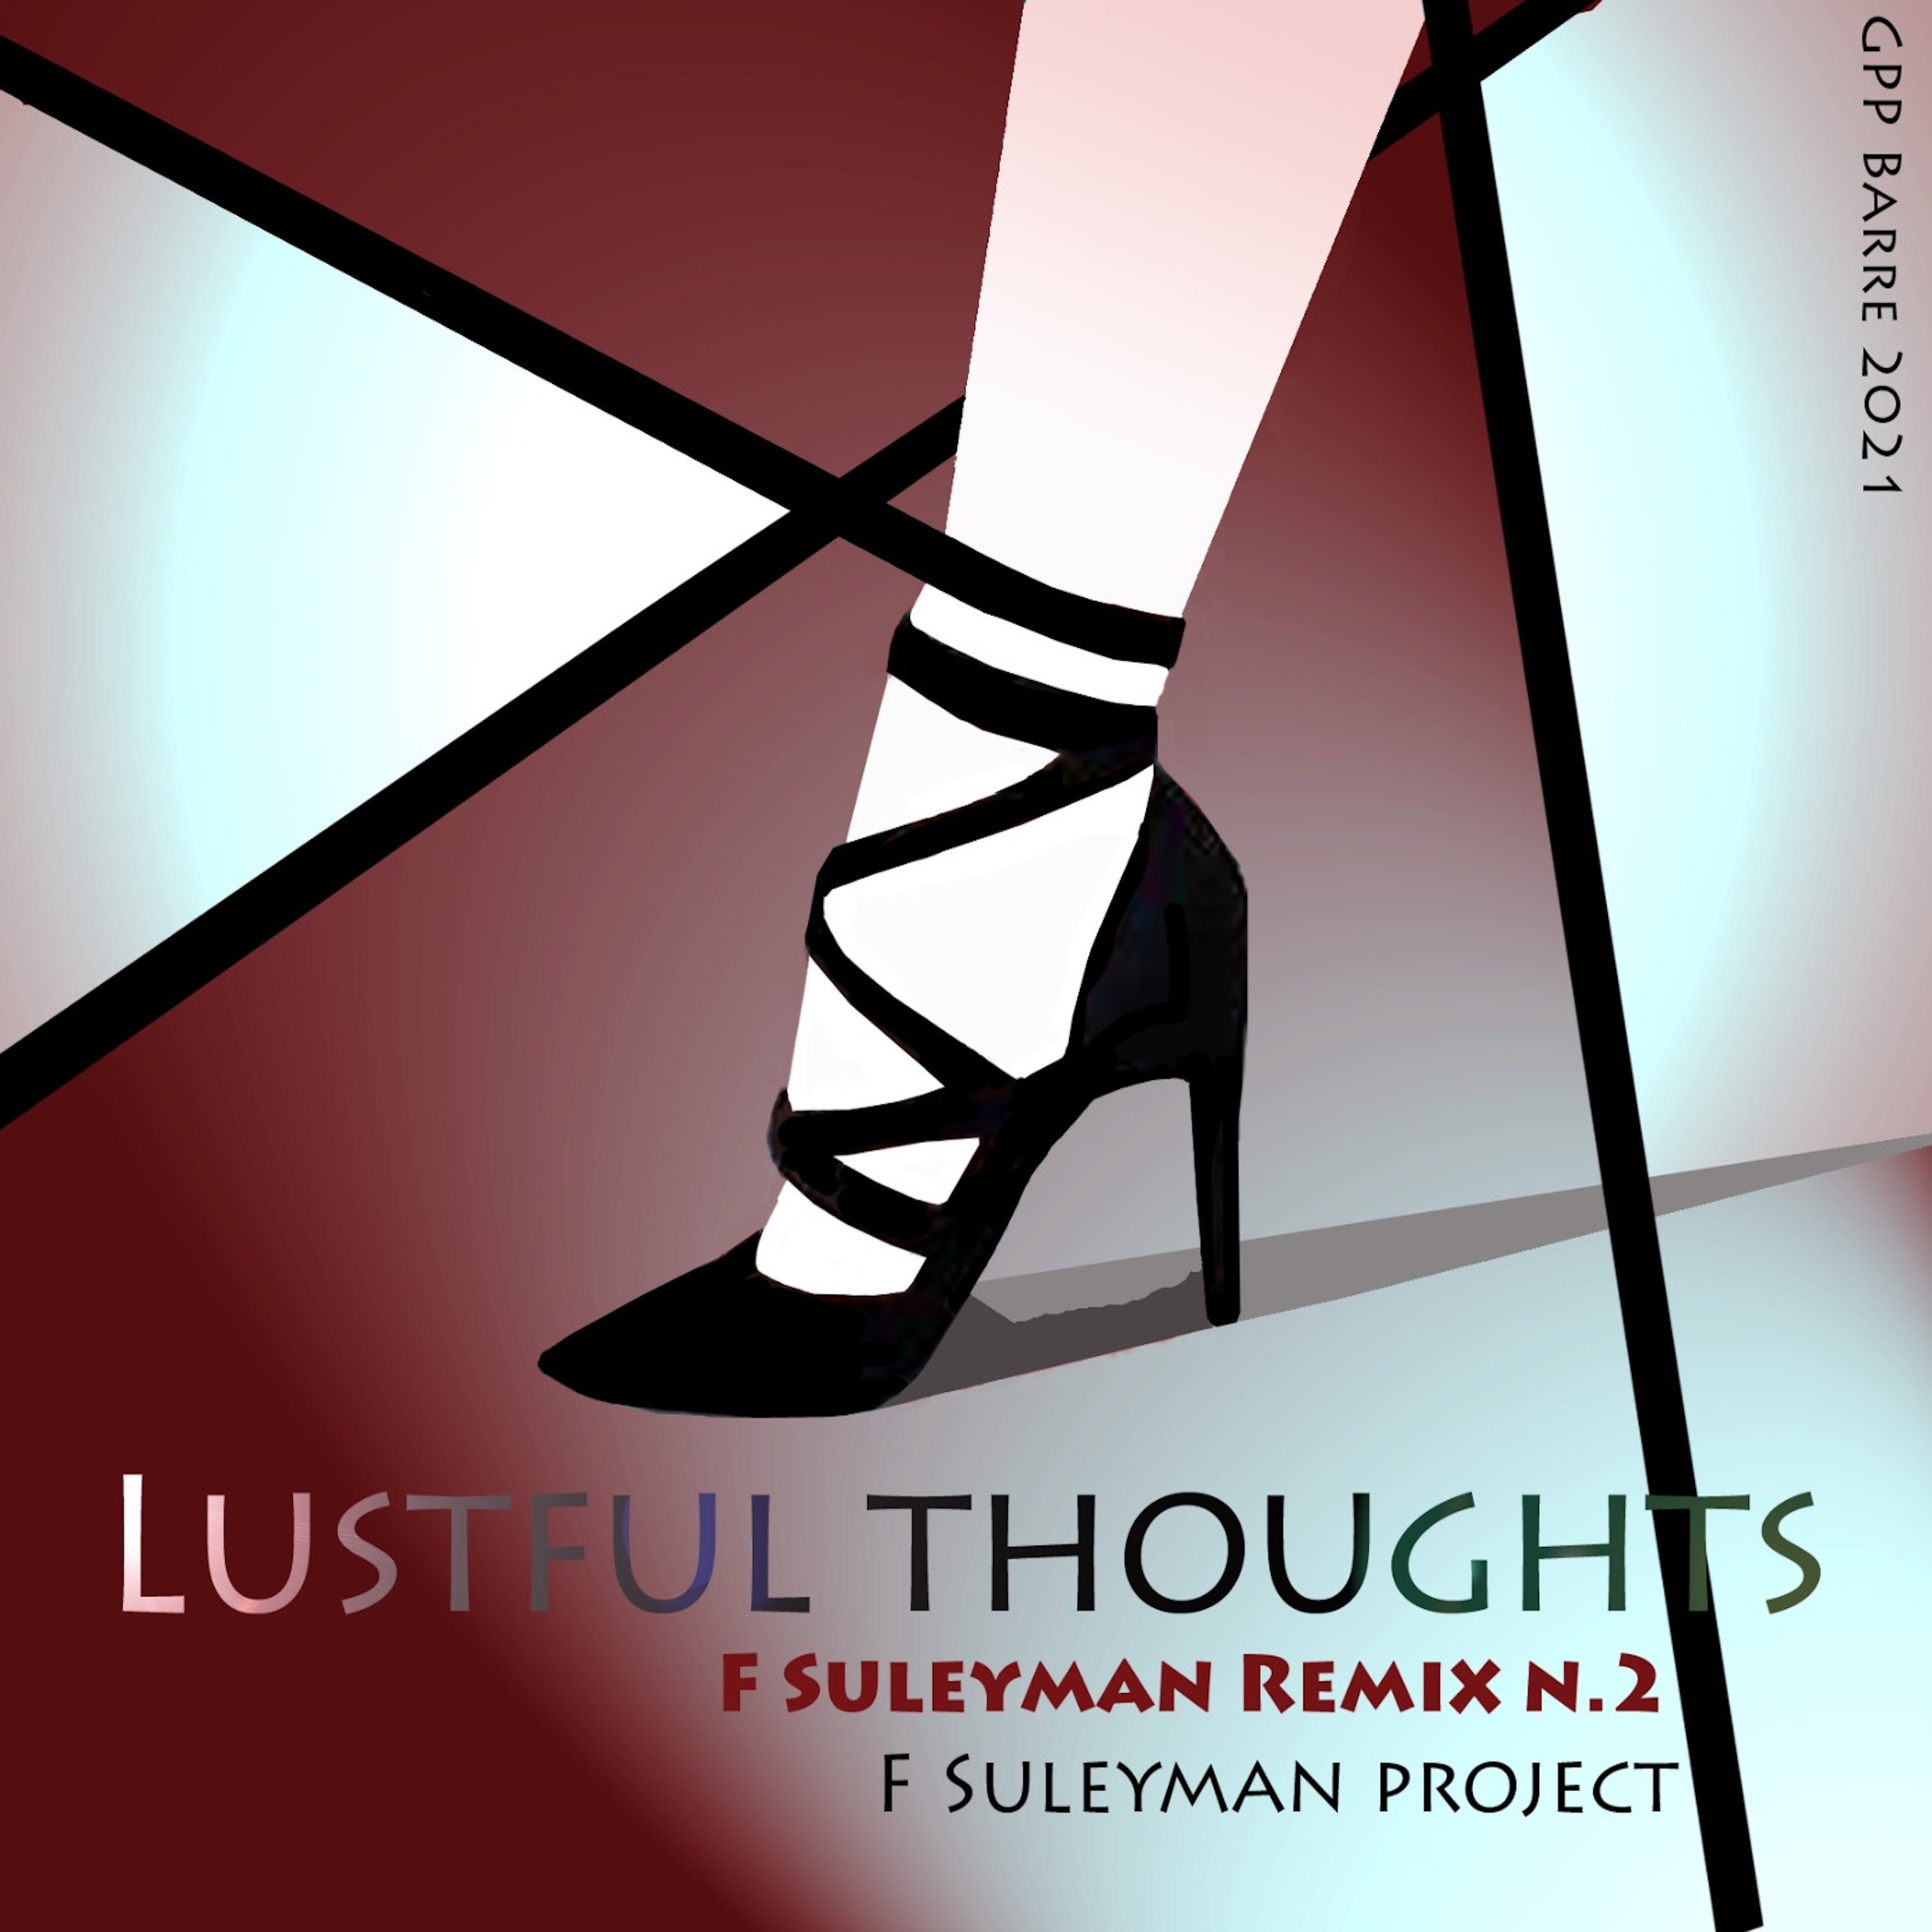 Un nuovo remix per il brano THE LUSTFUL THOUGHTS di F.Suleyman Project